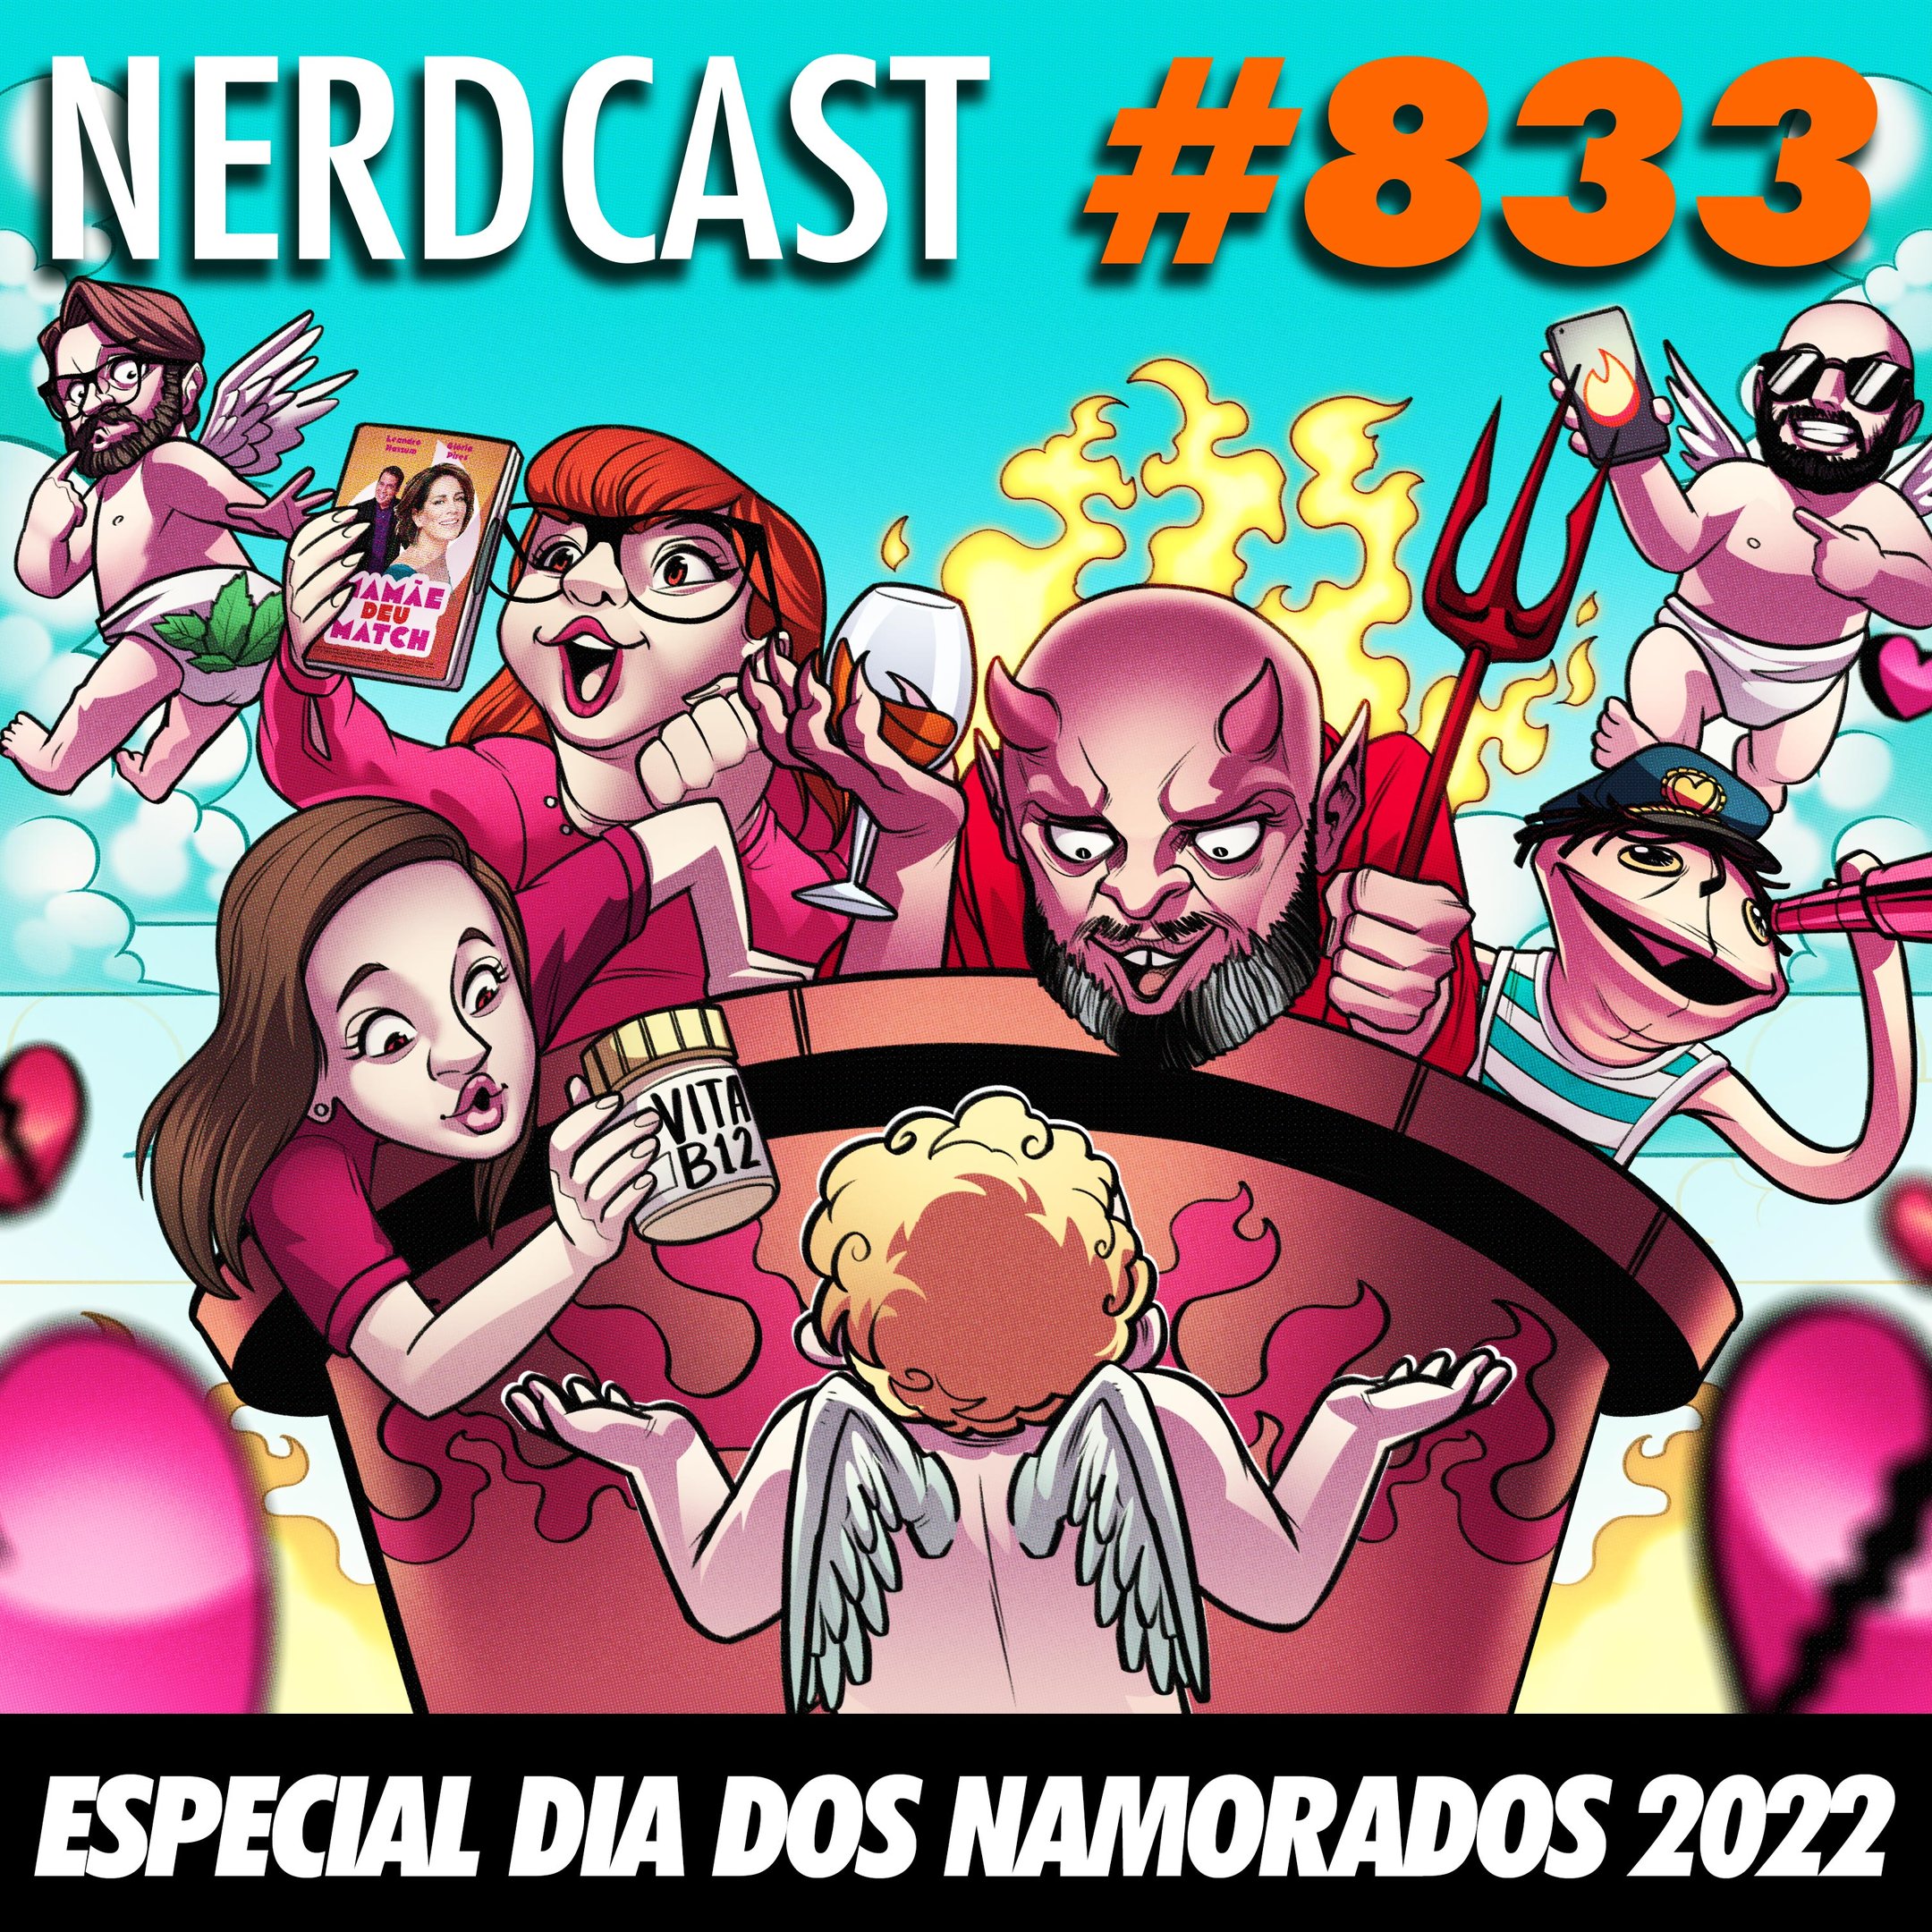 NerdCast 833 - Especial Dia dos Namorados 2022